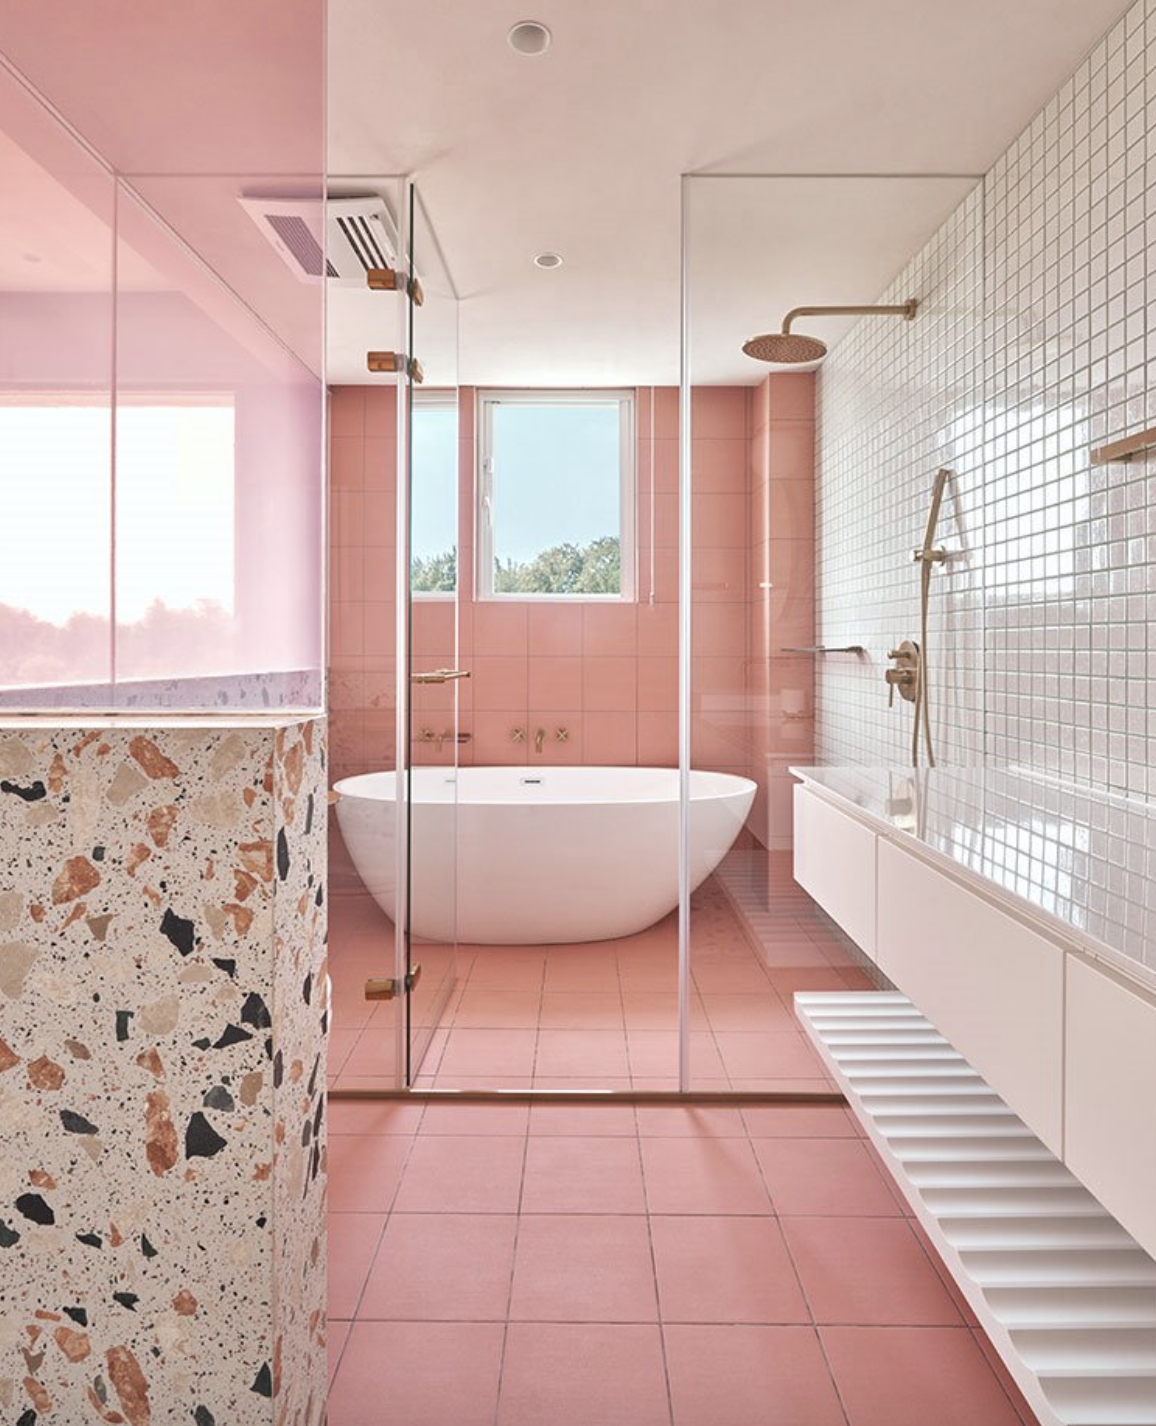 baño rosa con bañera exenta al fondo y azulejos blancos, rosas y terrazo